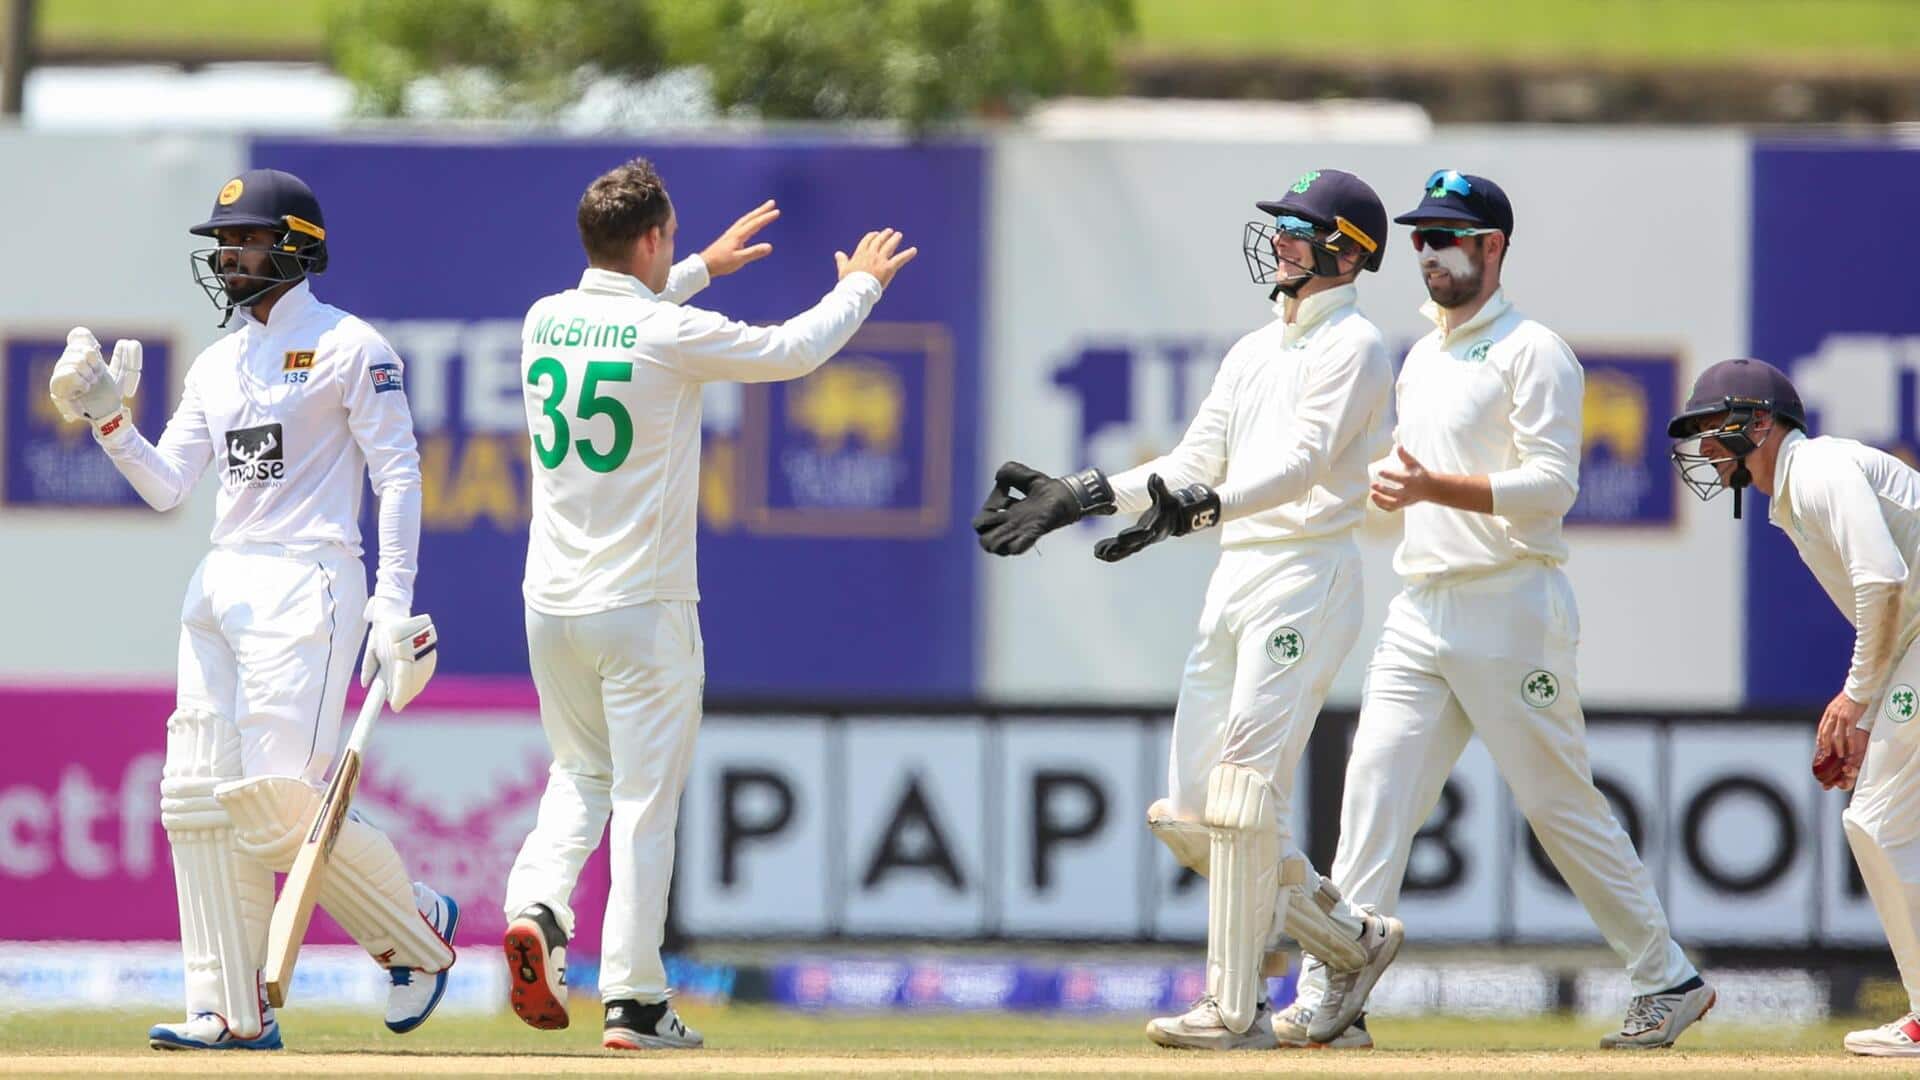 पहला टेस्ट: दूसरे दिन प्रभात जयसूर्या ने झटके 5 विकेट, श्रीलंका के खिलाफ आयरिश पारी लड़खड़ाई 